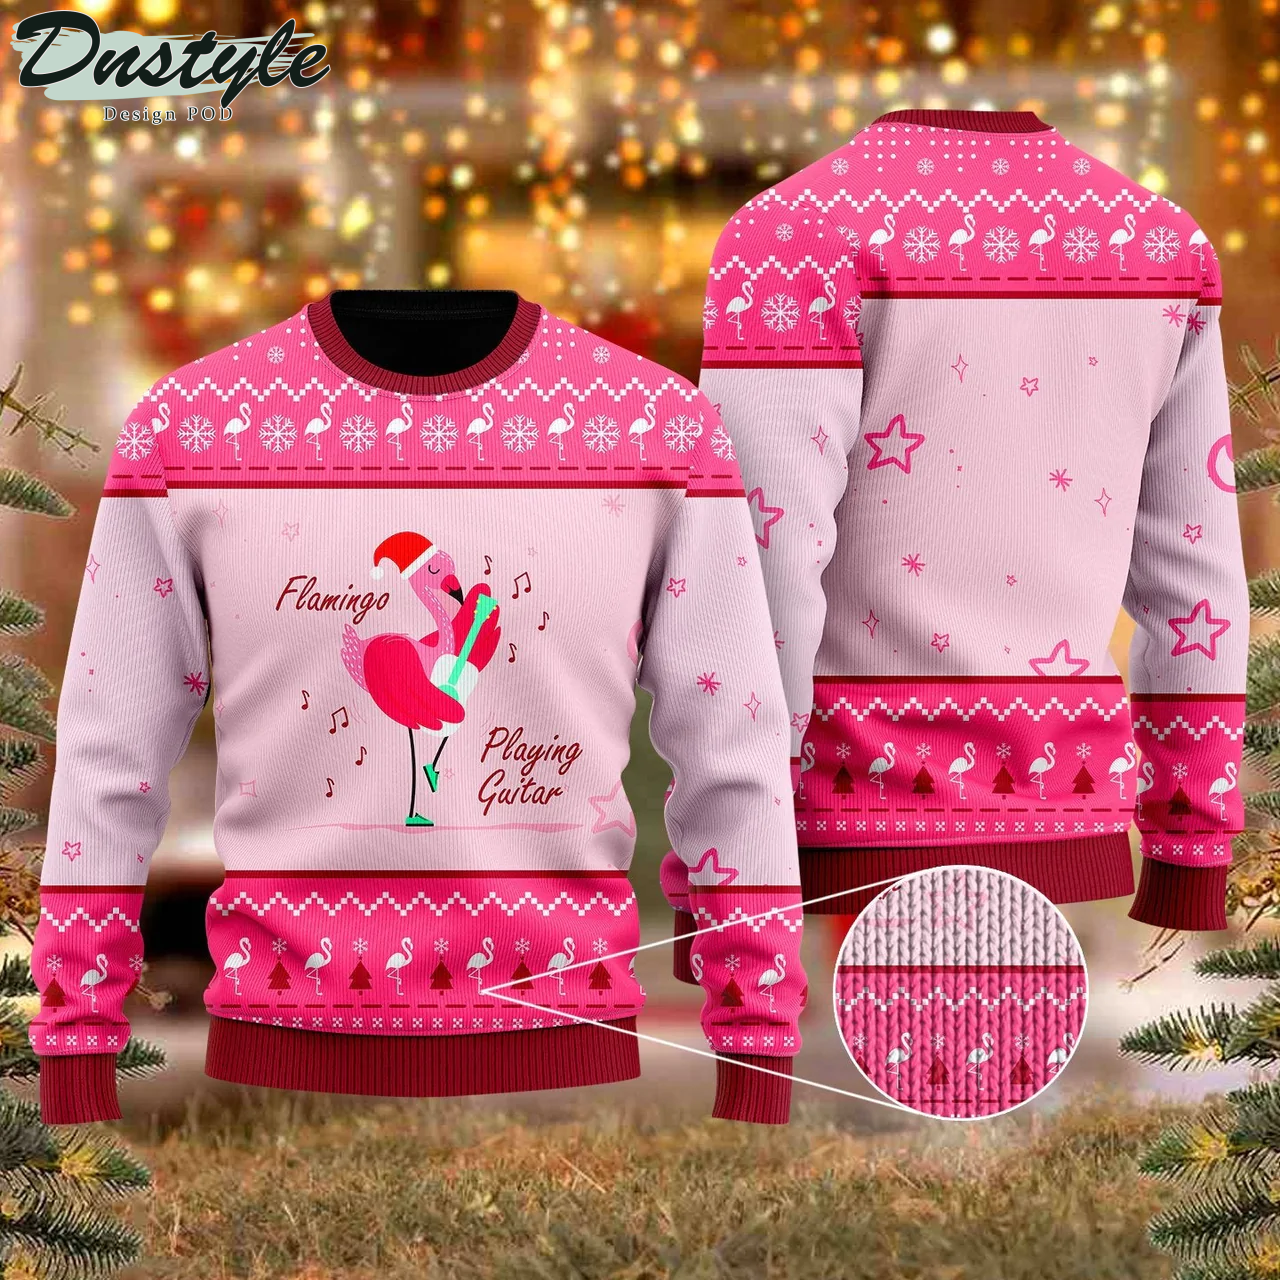 Flamingo Playing Guitar Christmas Ugly Christmas Sweater